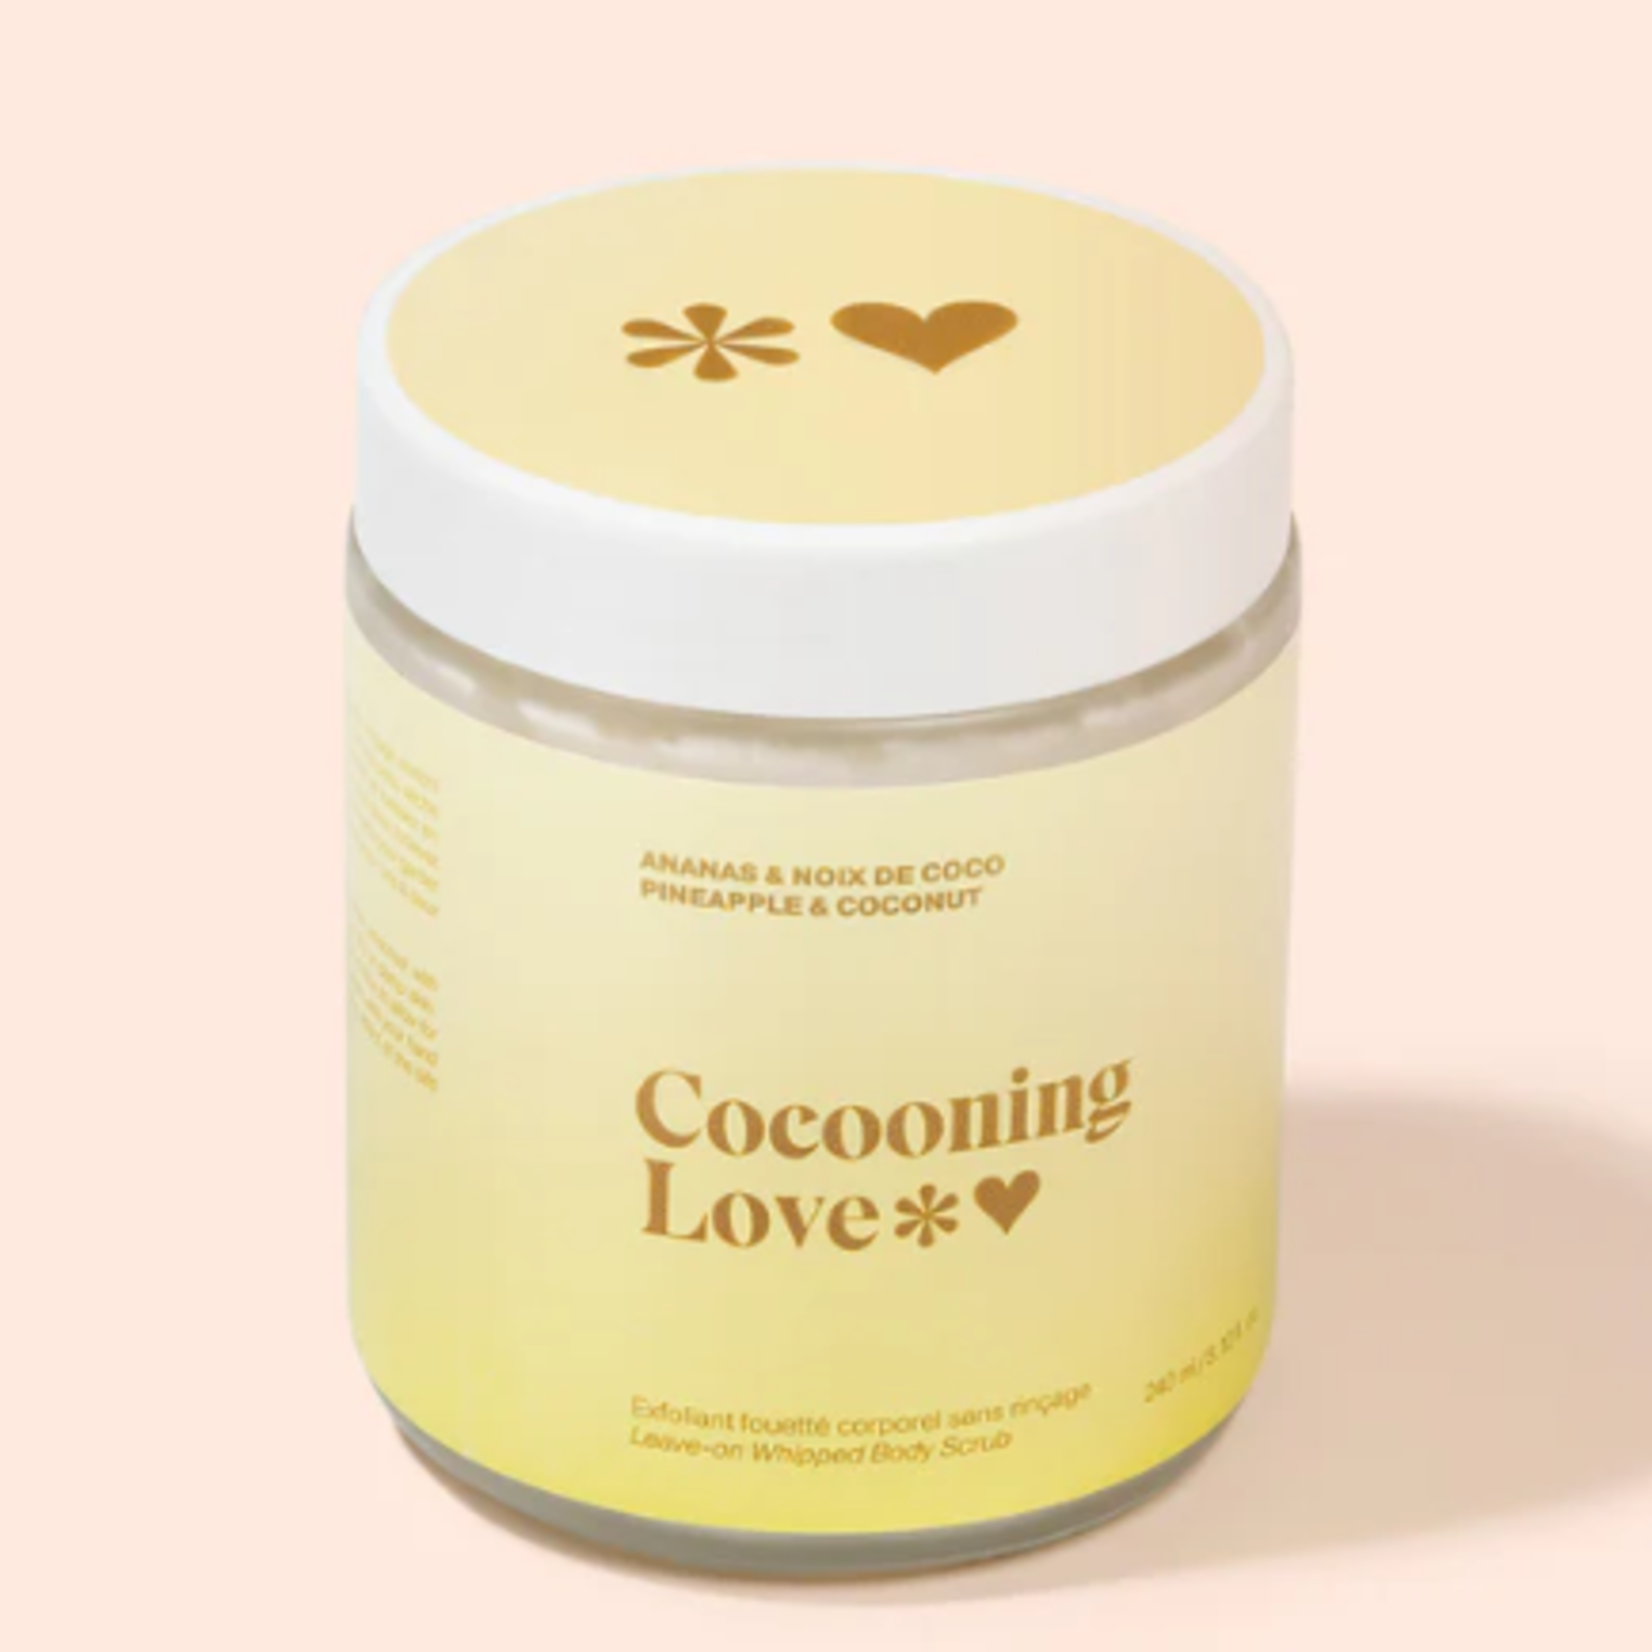 Cocooning Love Exfoliant fouetté corporel sans rinçage - Ananas et noix de coco